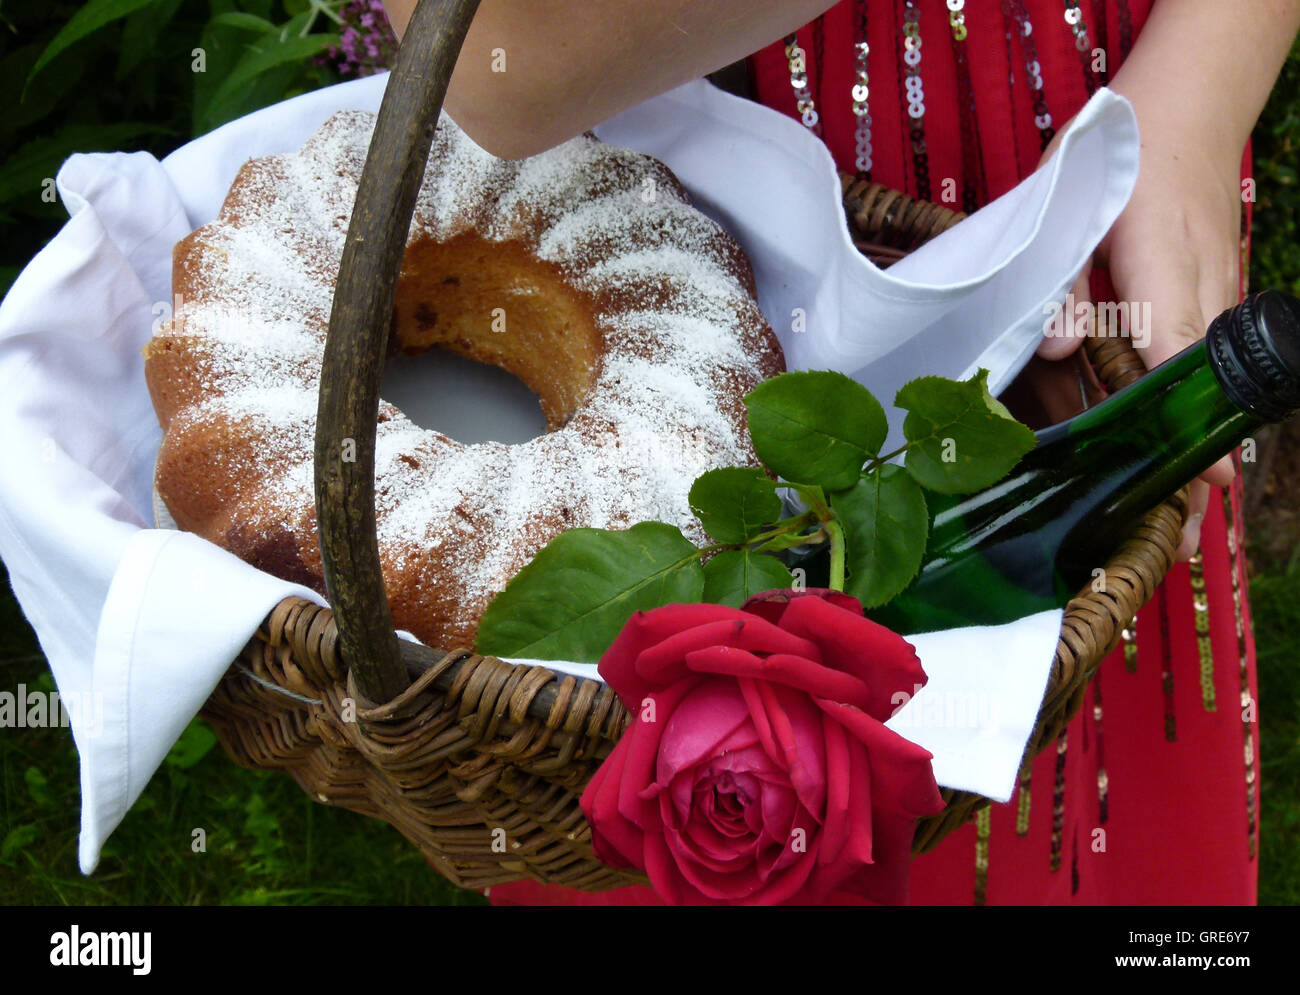 Korb, gefüllt mit einem Kuchen, Wein und eine rote Rose, wie Little Red Riding Hood Stockfoto